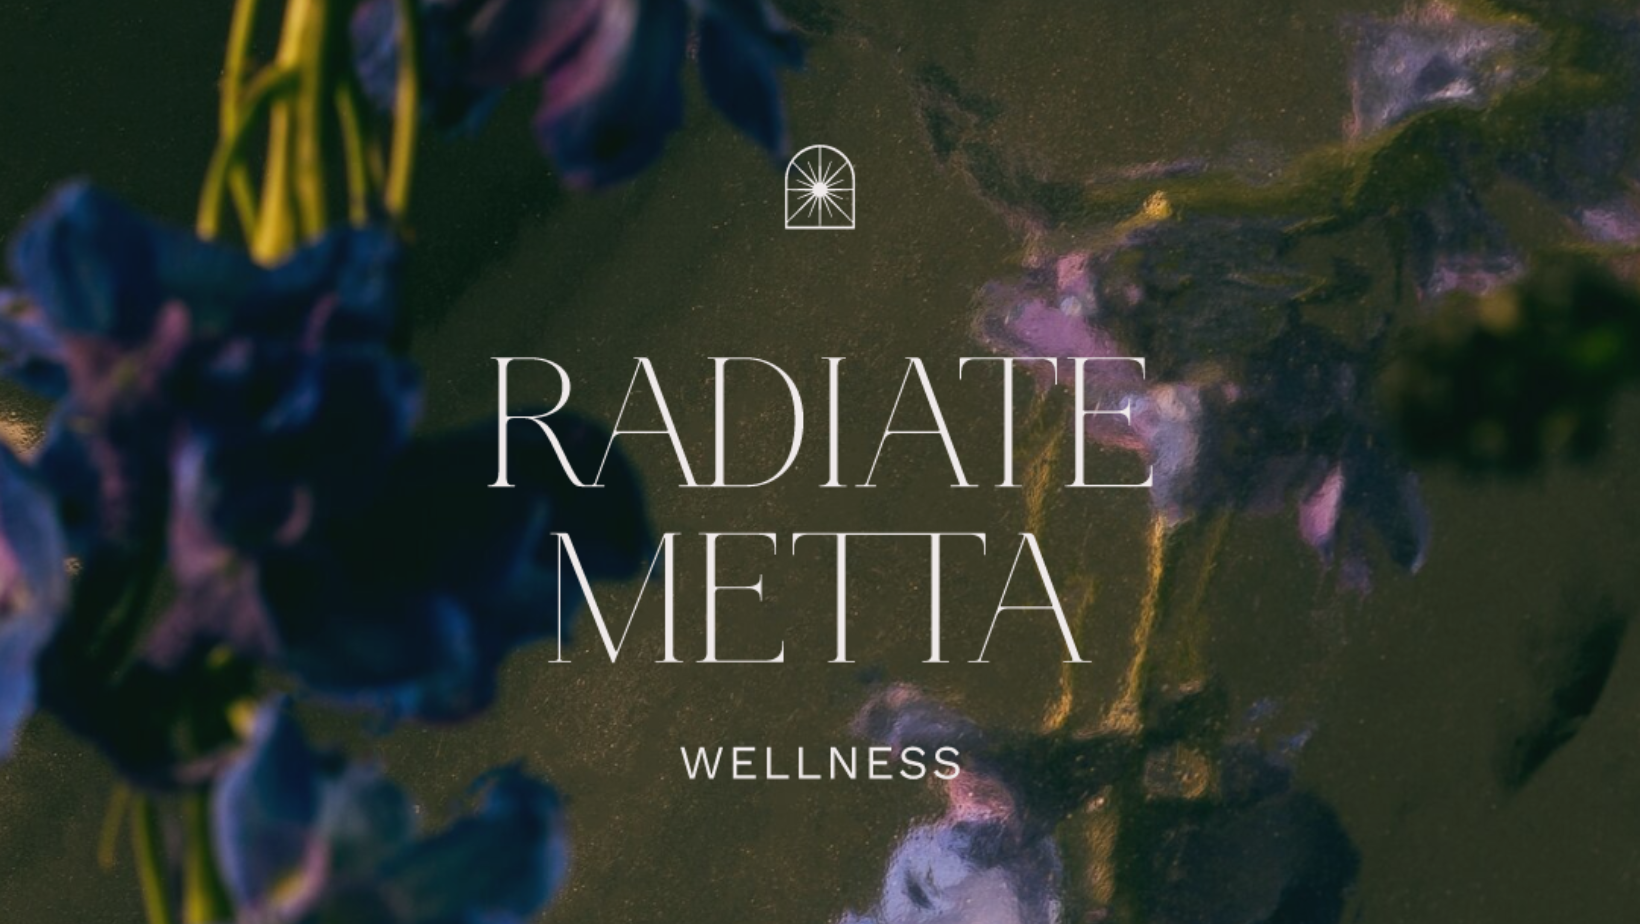 Radiate Metta Wellness